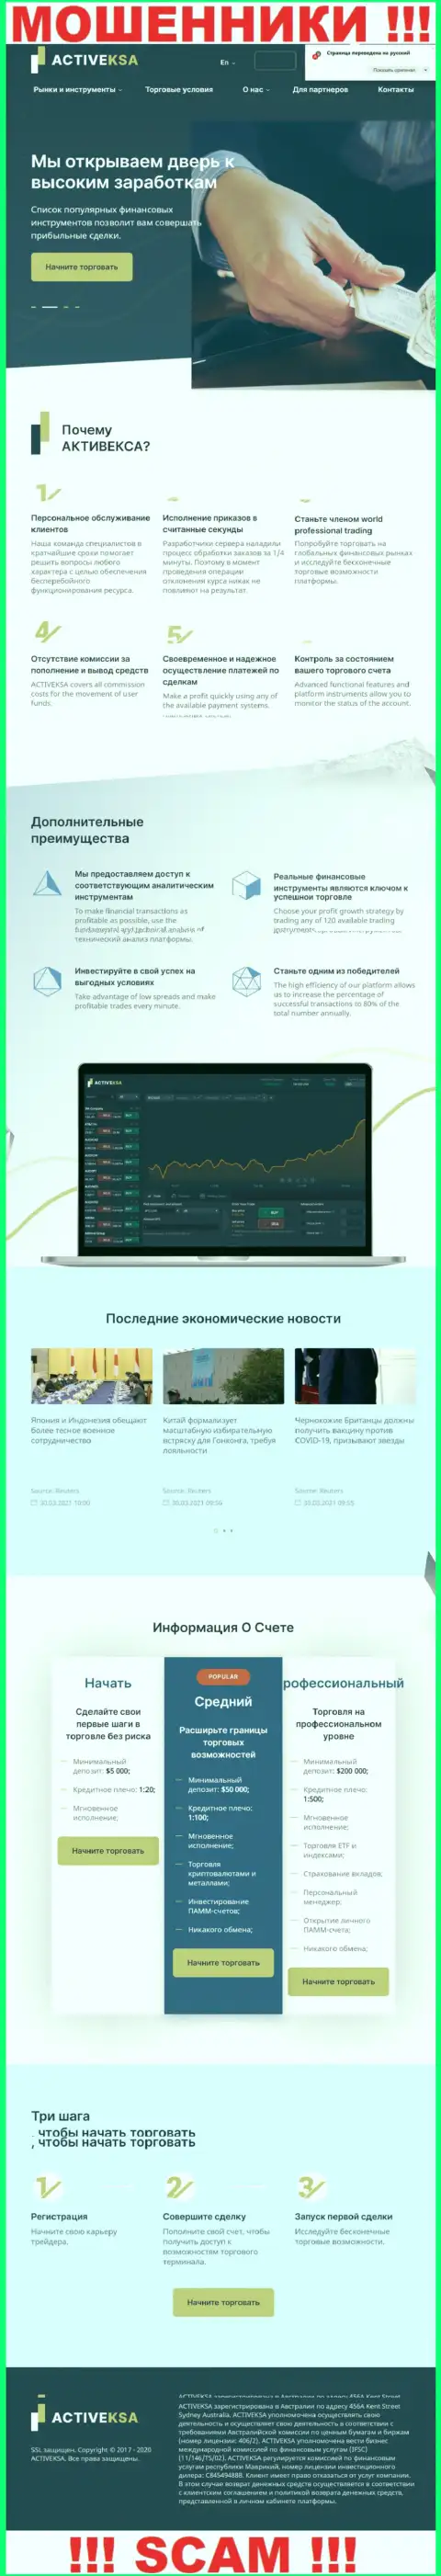 Активекса Ком - это официальный сайт мошенников Activeksa